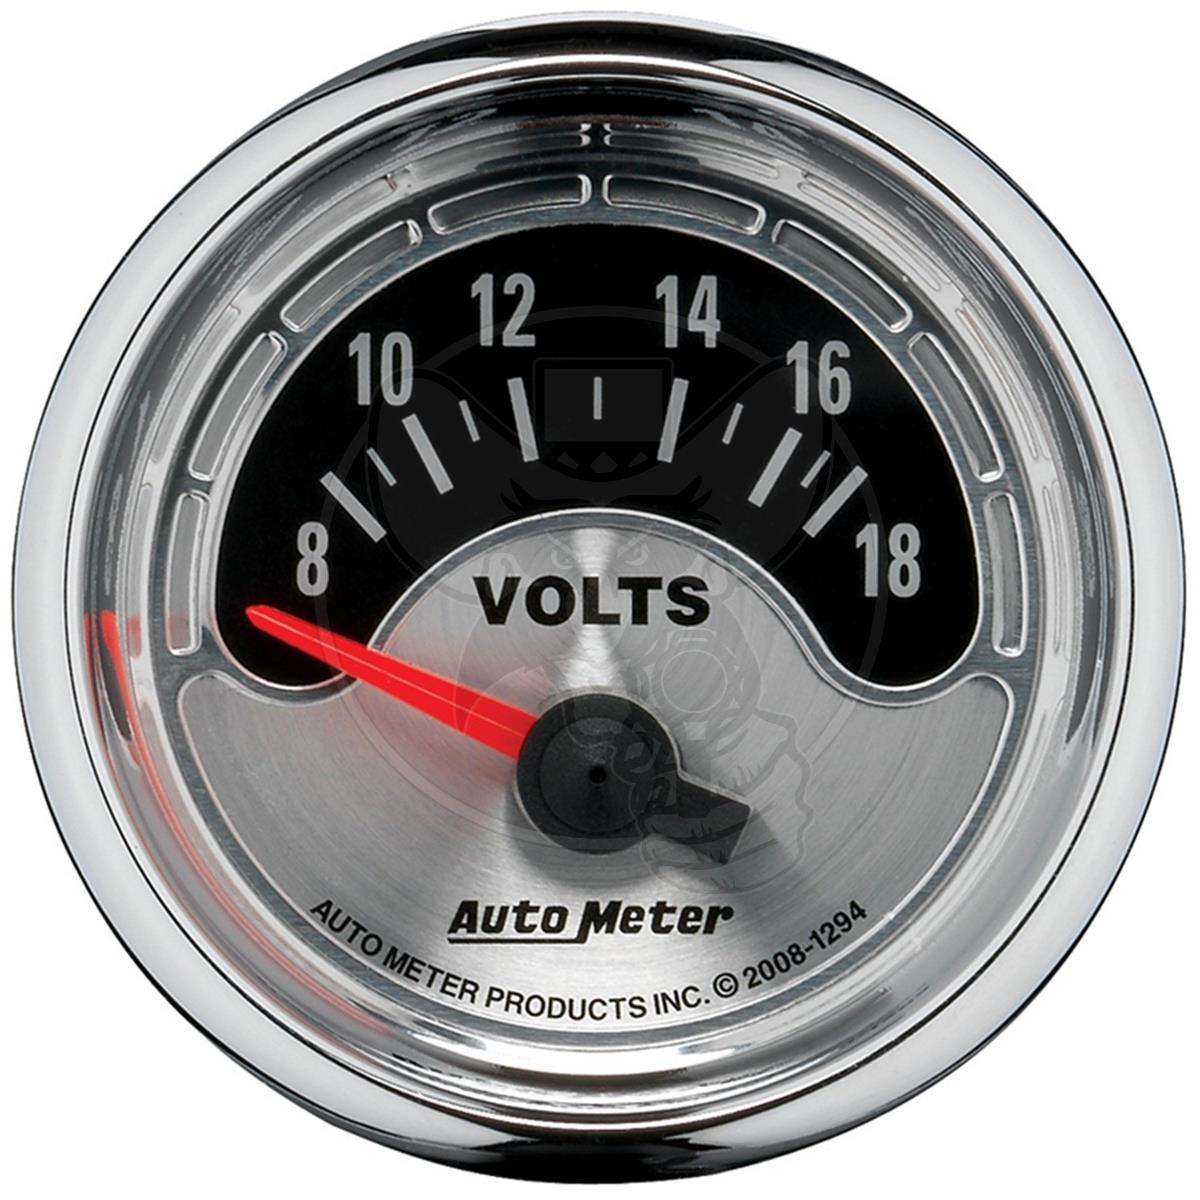 HOTSYSTEM 7 Color Voltmeter Volt Gauge Kit 8 to 18 Volt Pointer & LED Digital Readouts 2-1/16 52mm Black Dial for Car Truck 